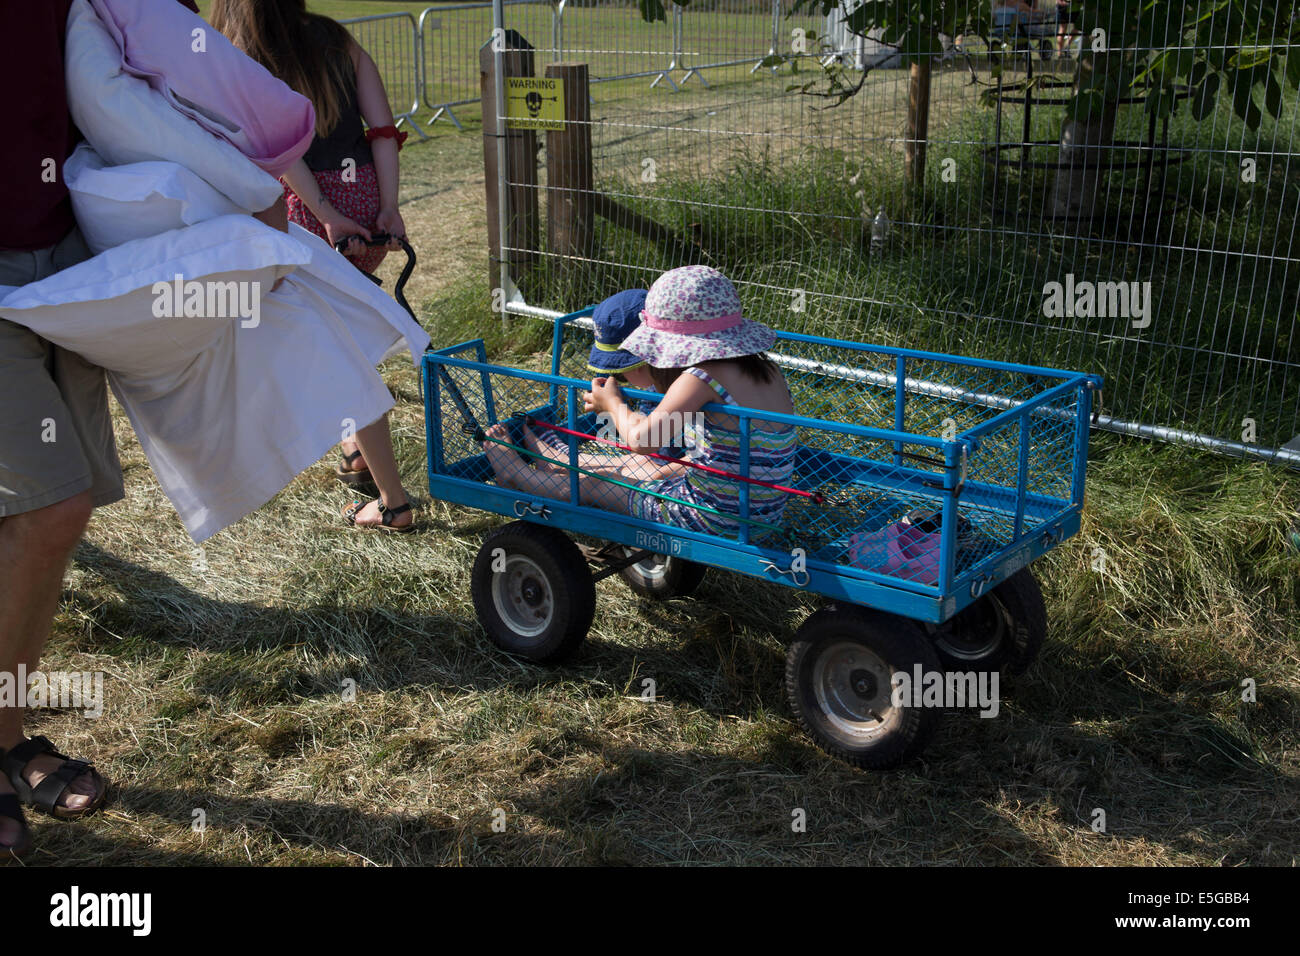 Madre tirando i bambini in un carrello. Campeggio a una festa di famiglia. Uomo che porta biancheria da letto. Cuscini. Foto Stock